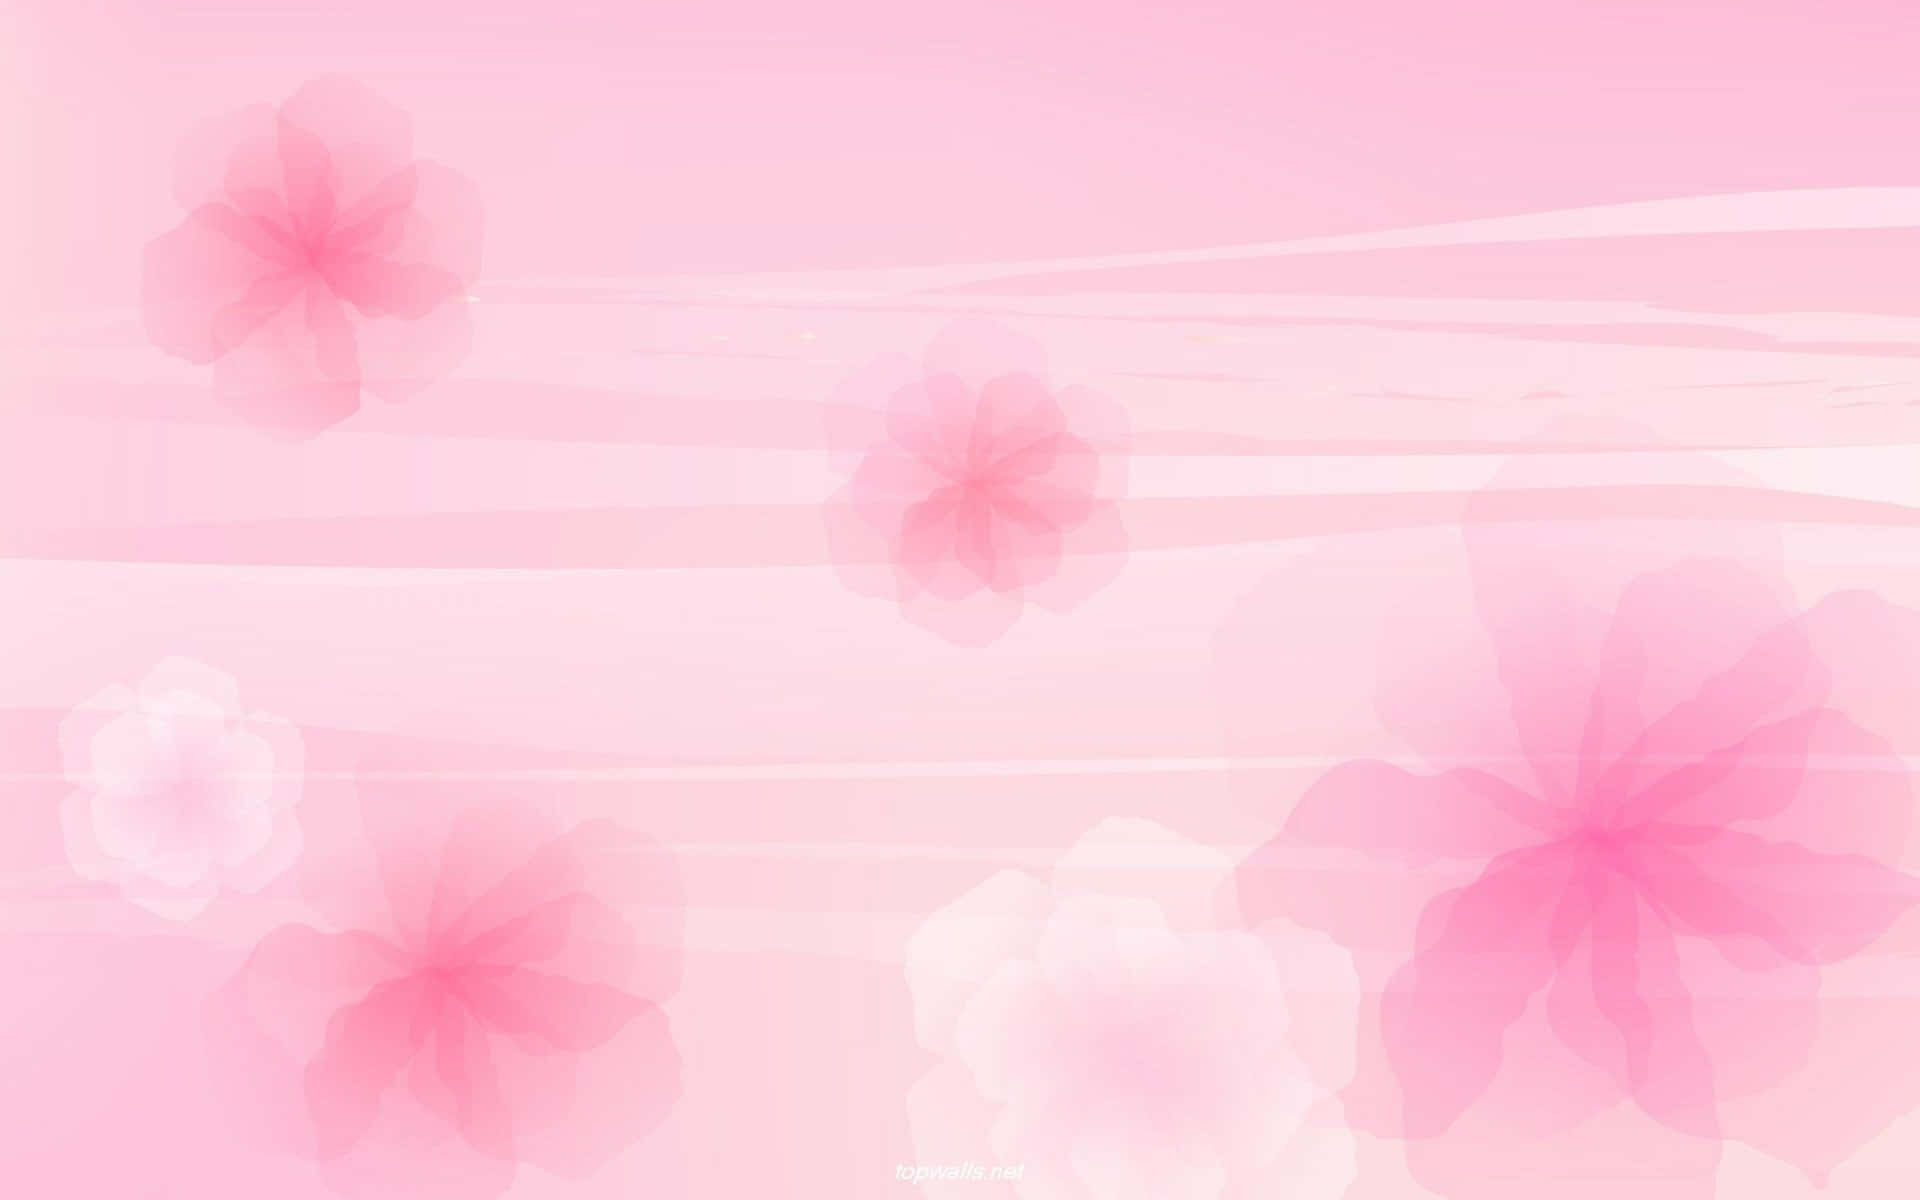 Farverigtbaggrundsbillede I Nuancer Af Pink.